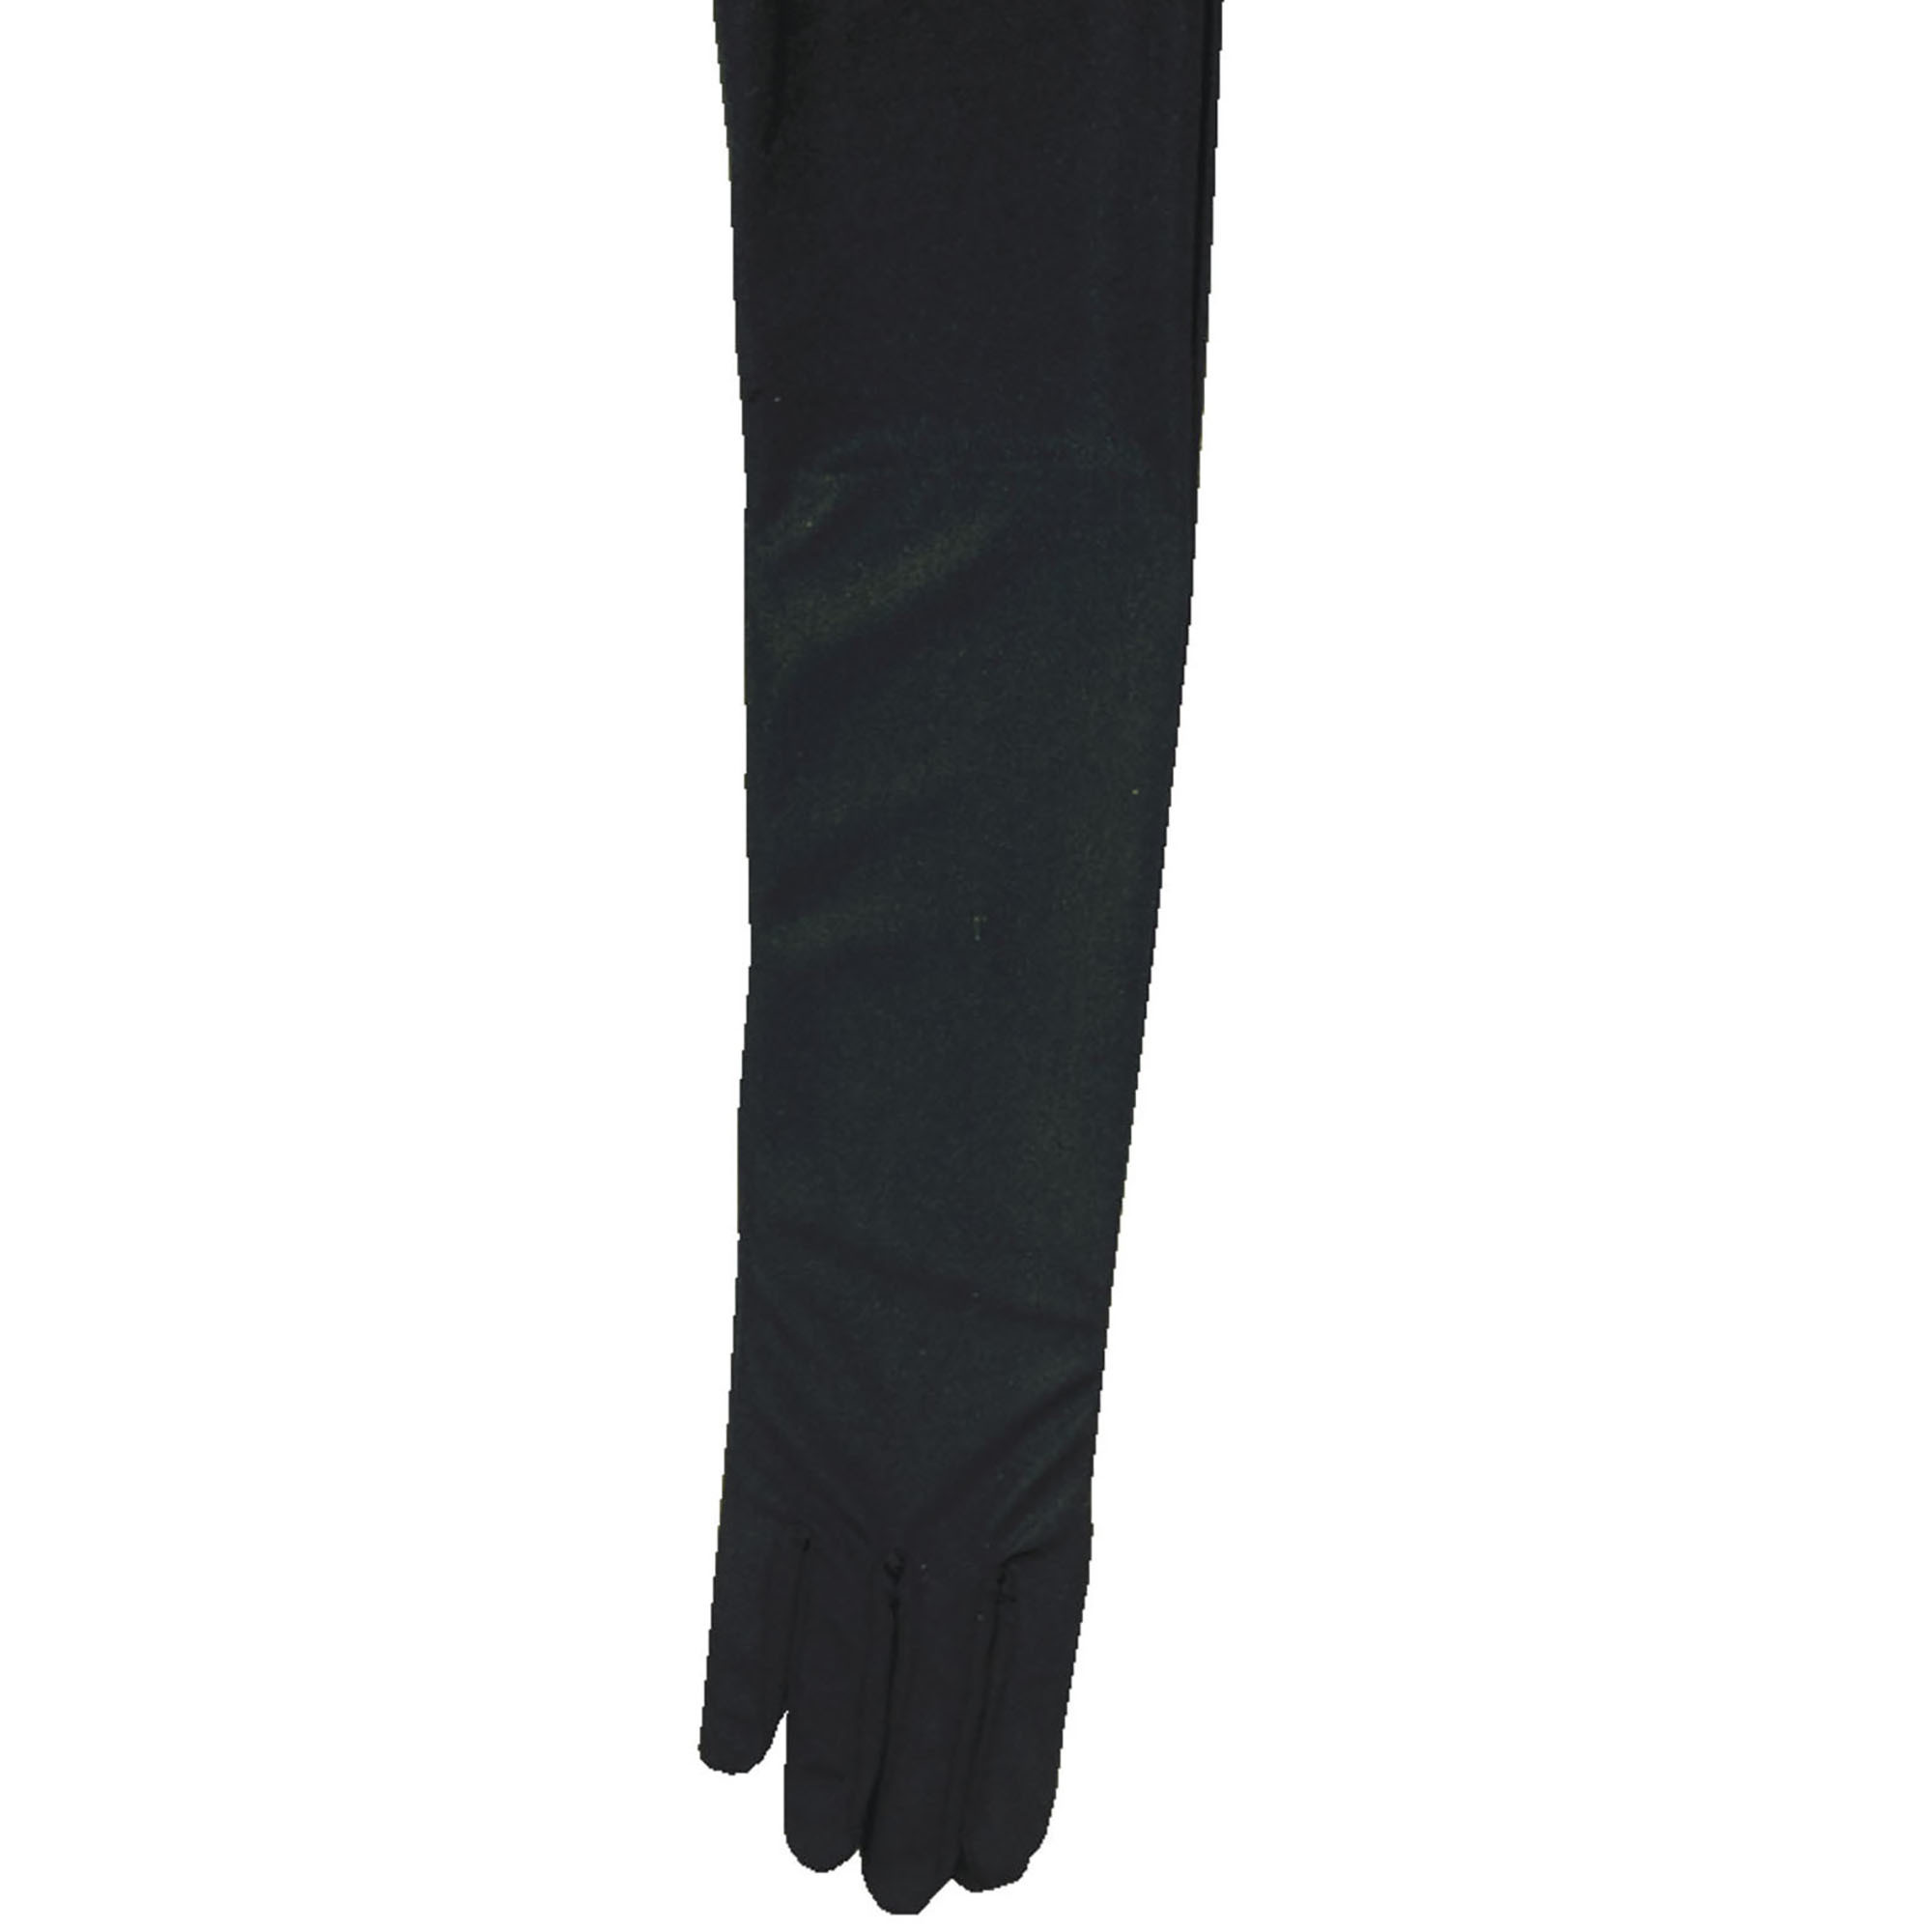 Handschoenen satijn zwart 60cm lang